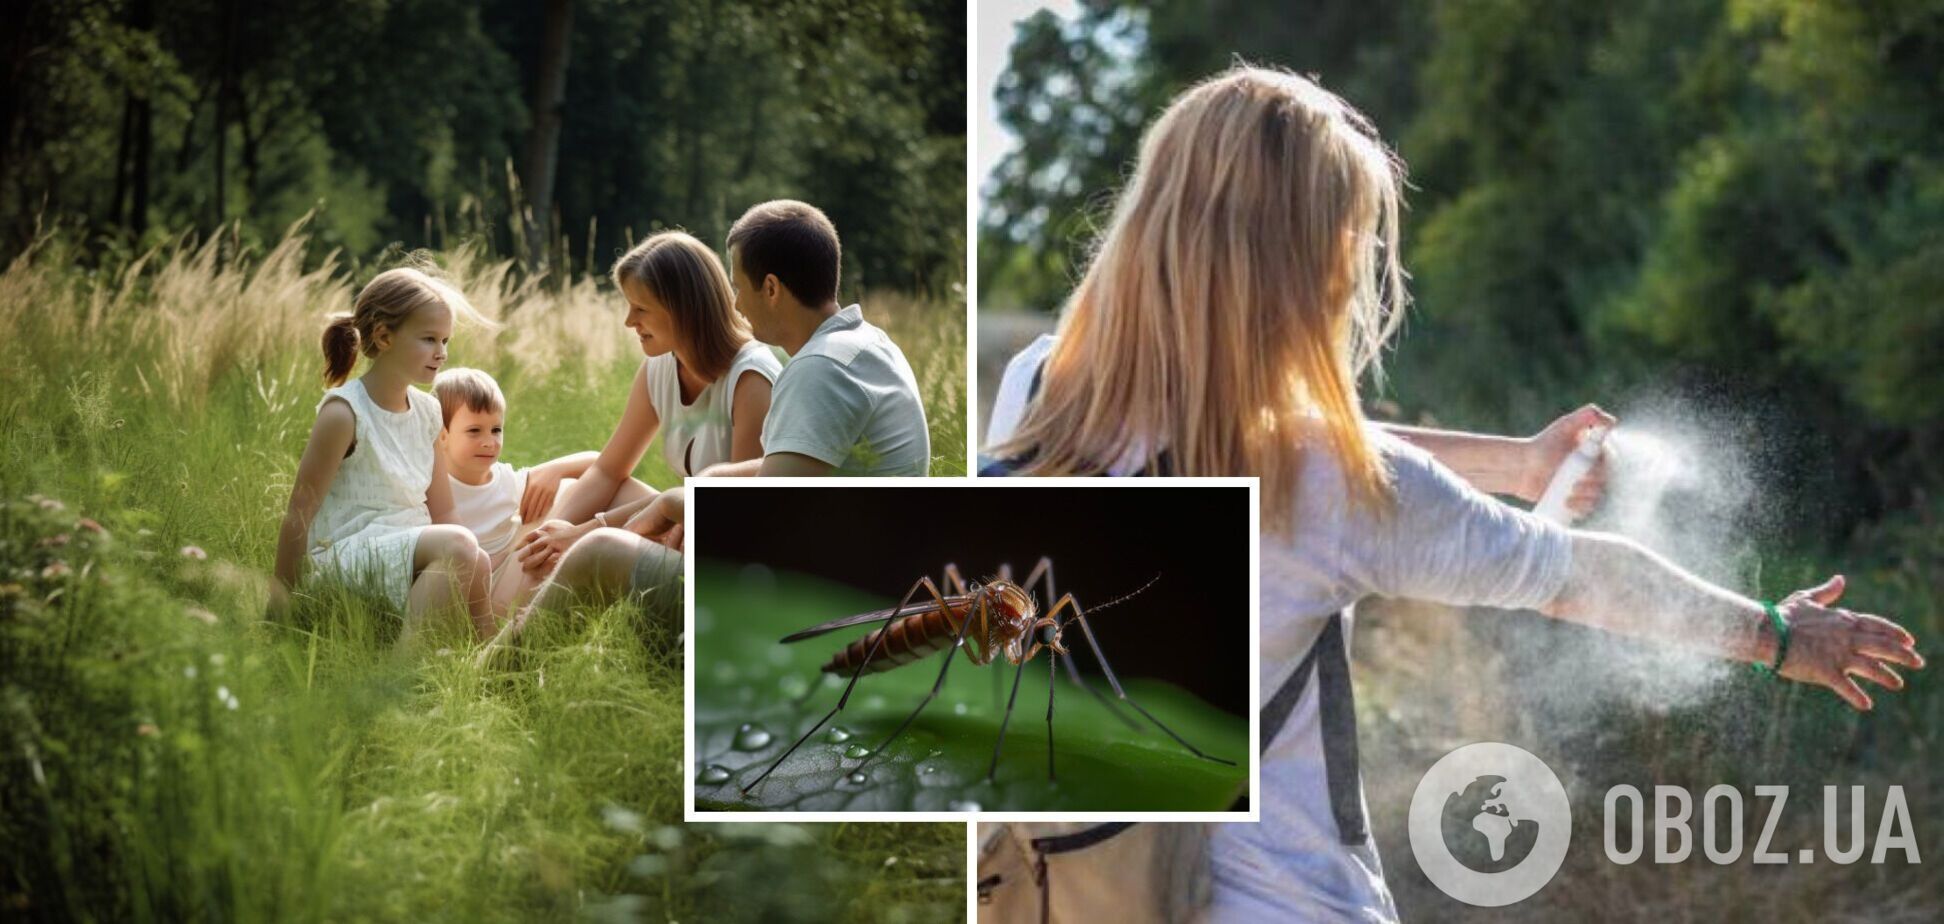 Как защититься от укусов комаров: народные средства со 100% эффектом